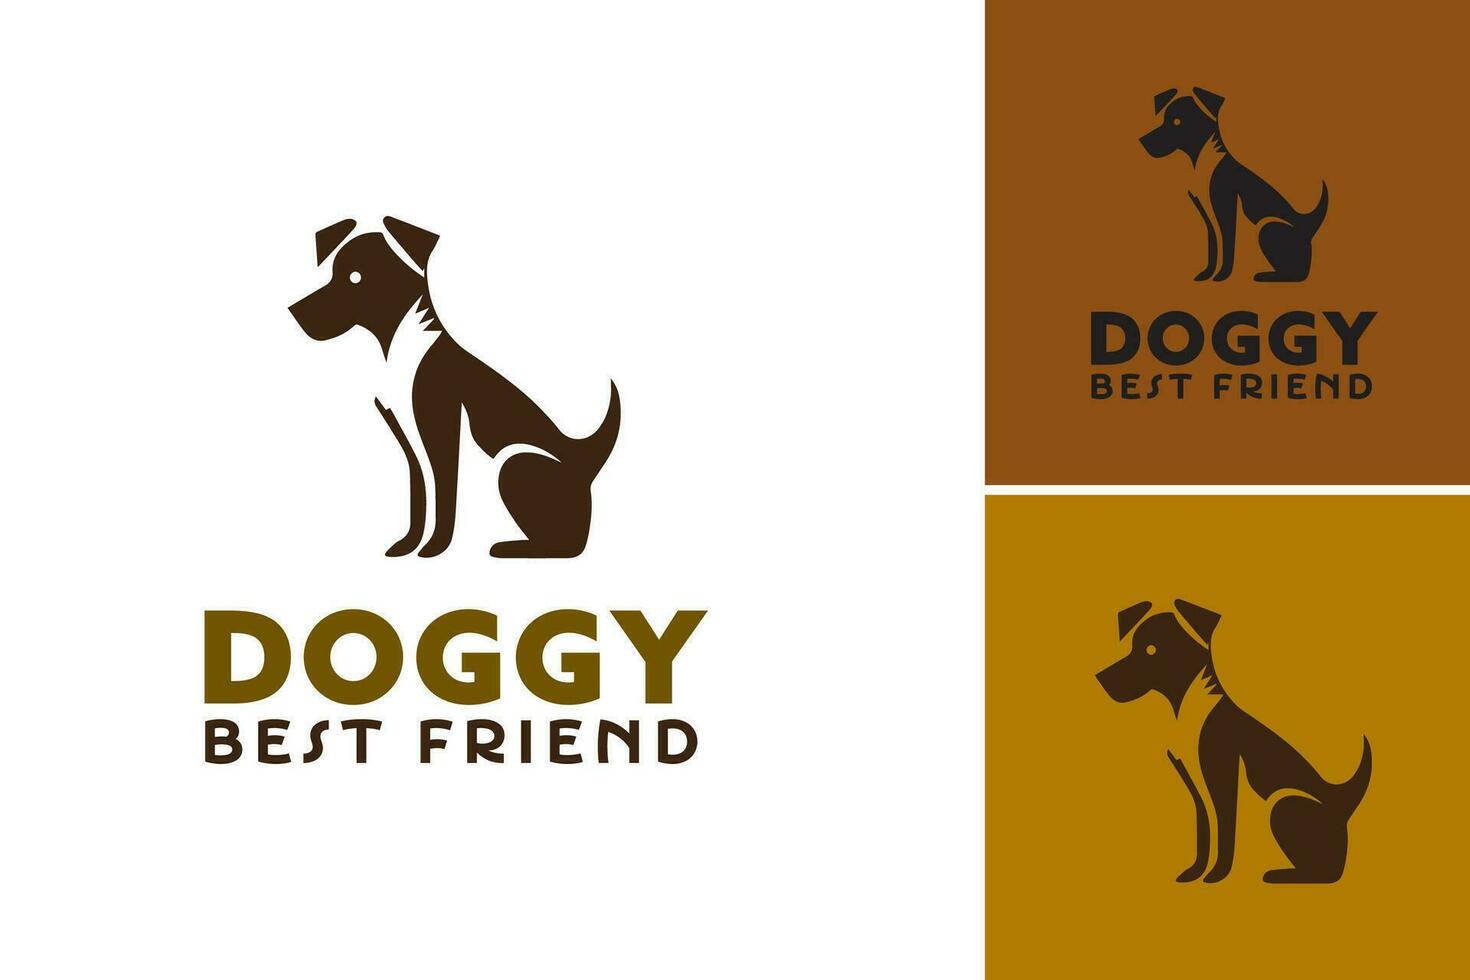 perrito mejor amigo logo es un diseño activo adecuado para negocios o organizaciones relacionado a perros, mascotas, o animal cuidado. eso lata ser usado como un logo a representar un marca vector